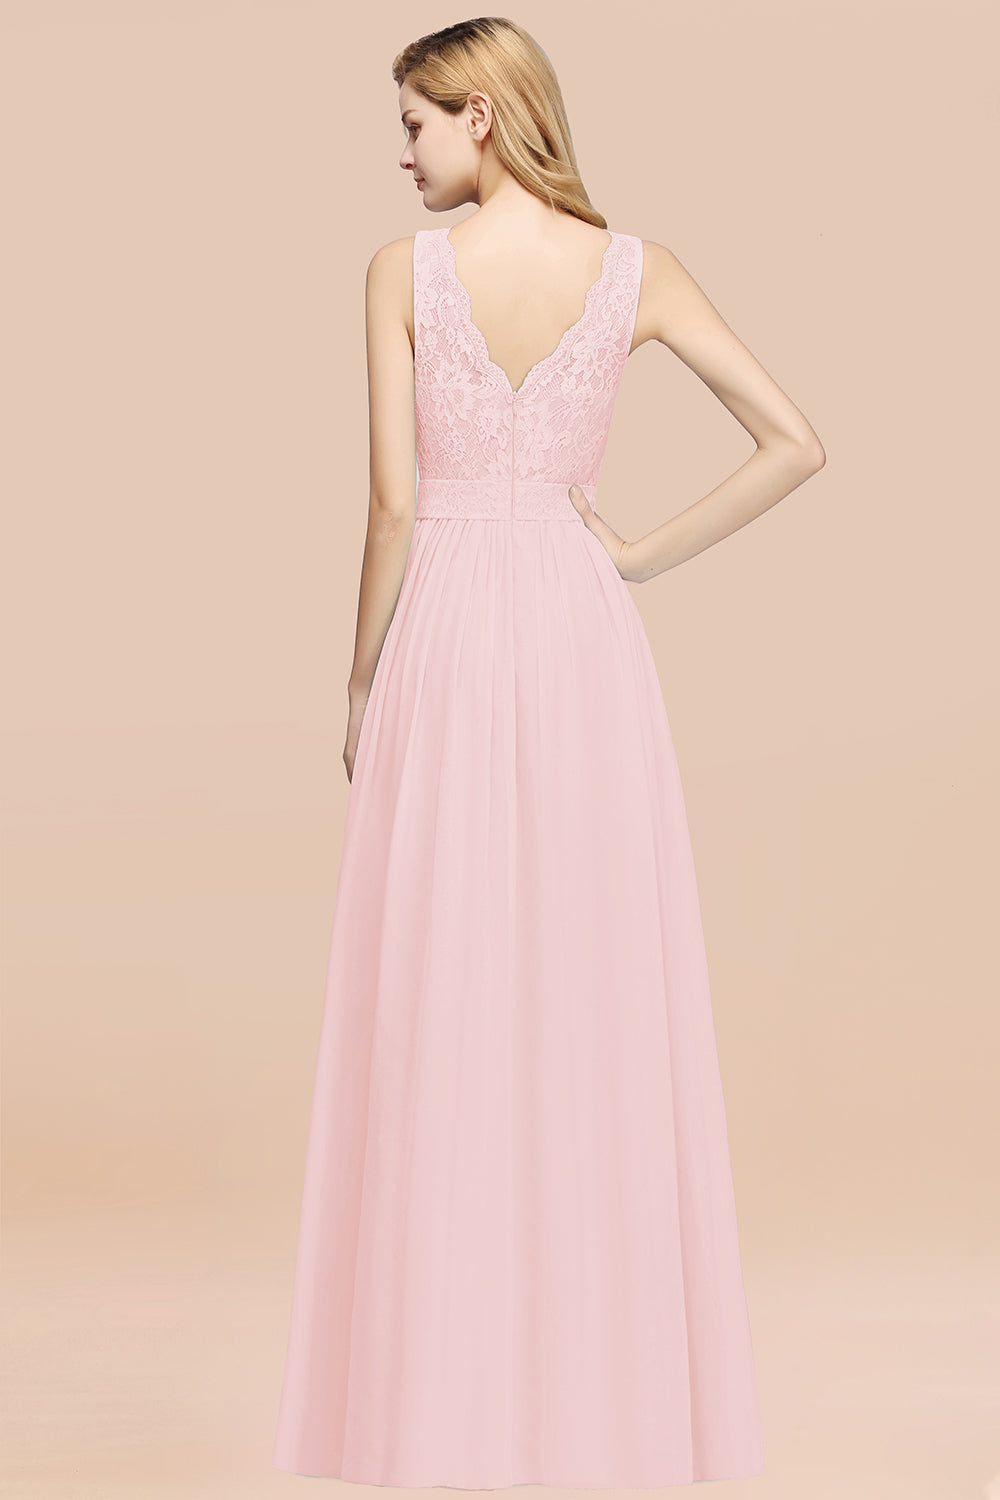 A-Line Lace Scalloped Chiffon Long Bridesmaid Dress with Ruffles-27Dress